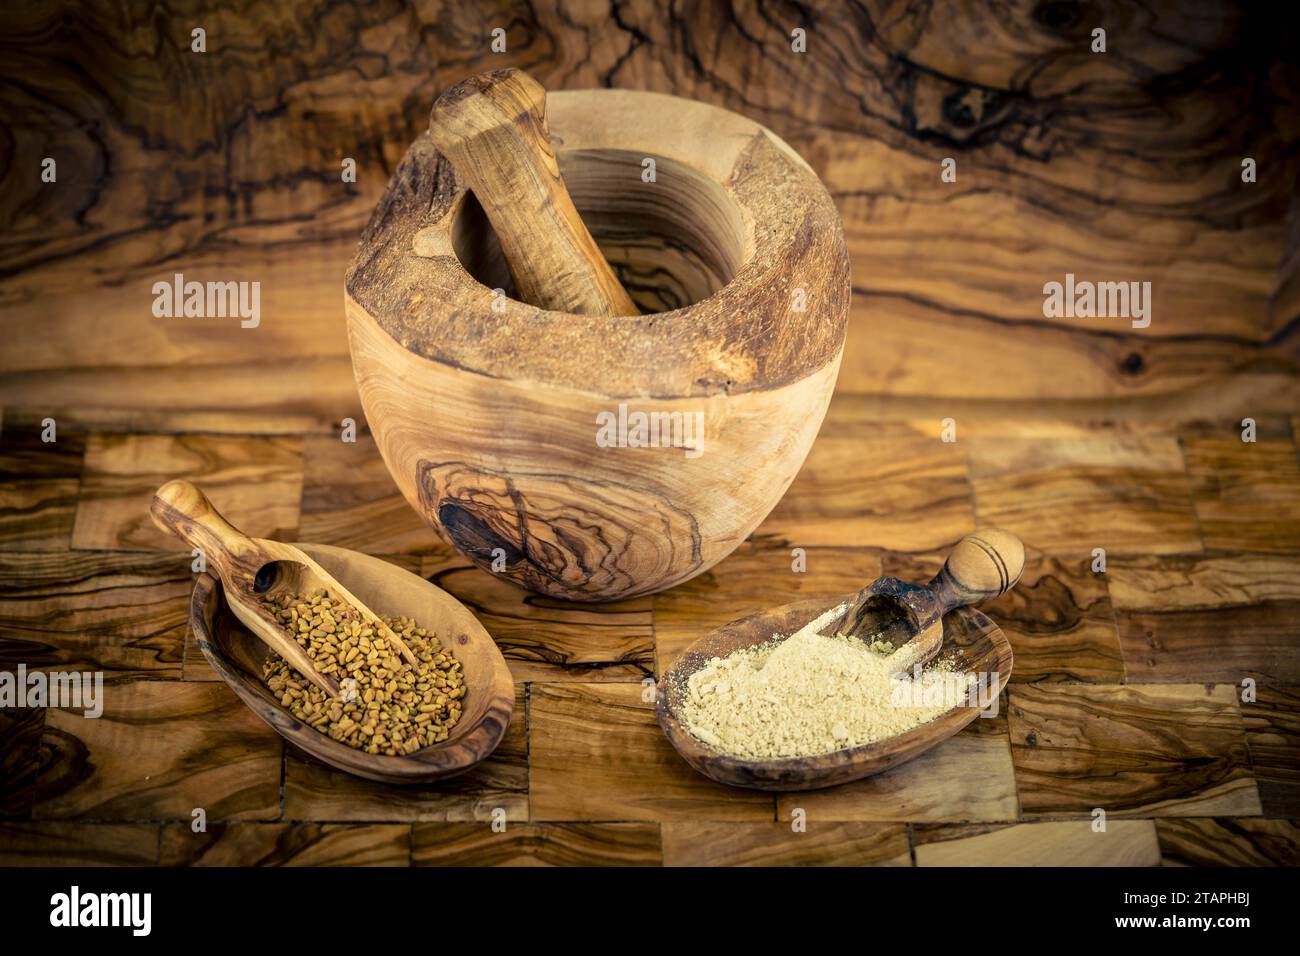 Fenugreek seeds whole or ground on olive wood Stock Photo